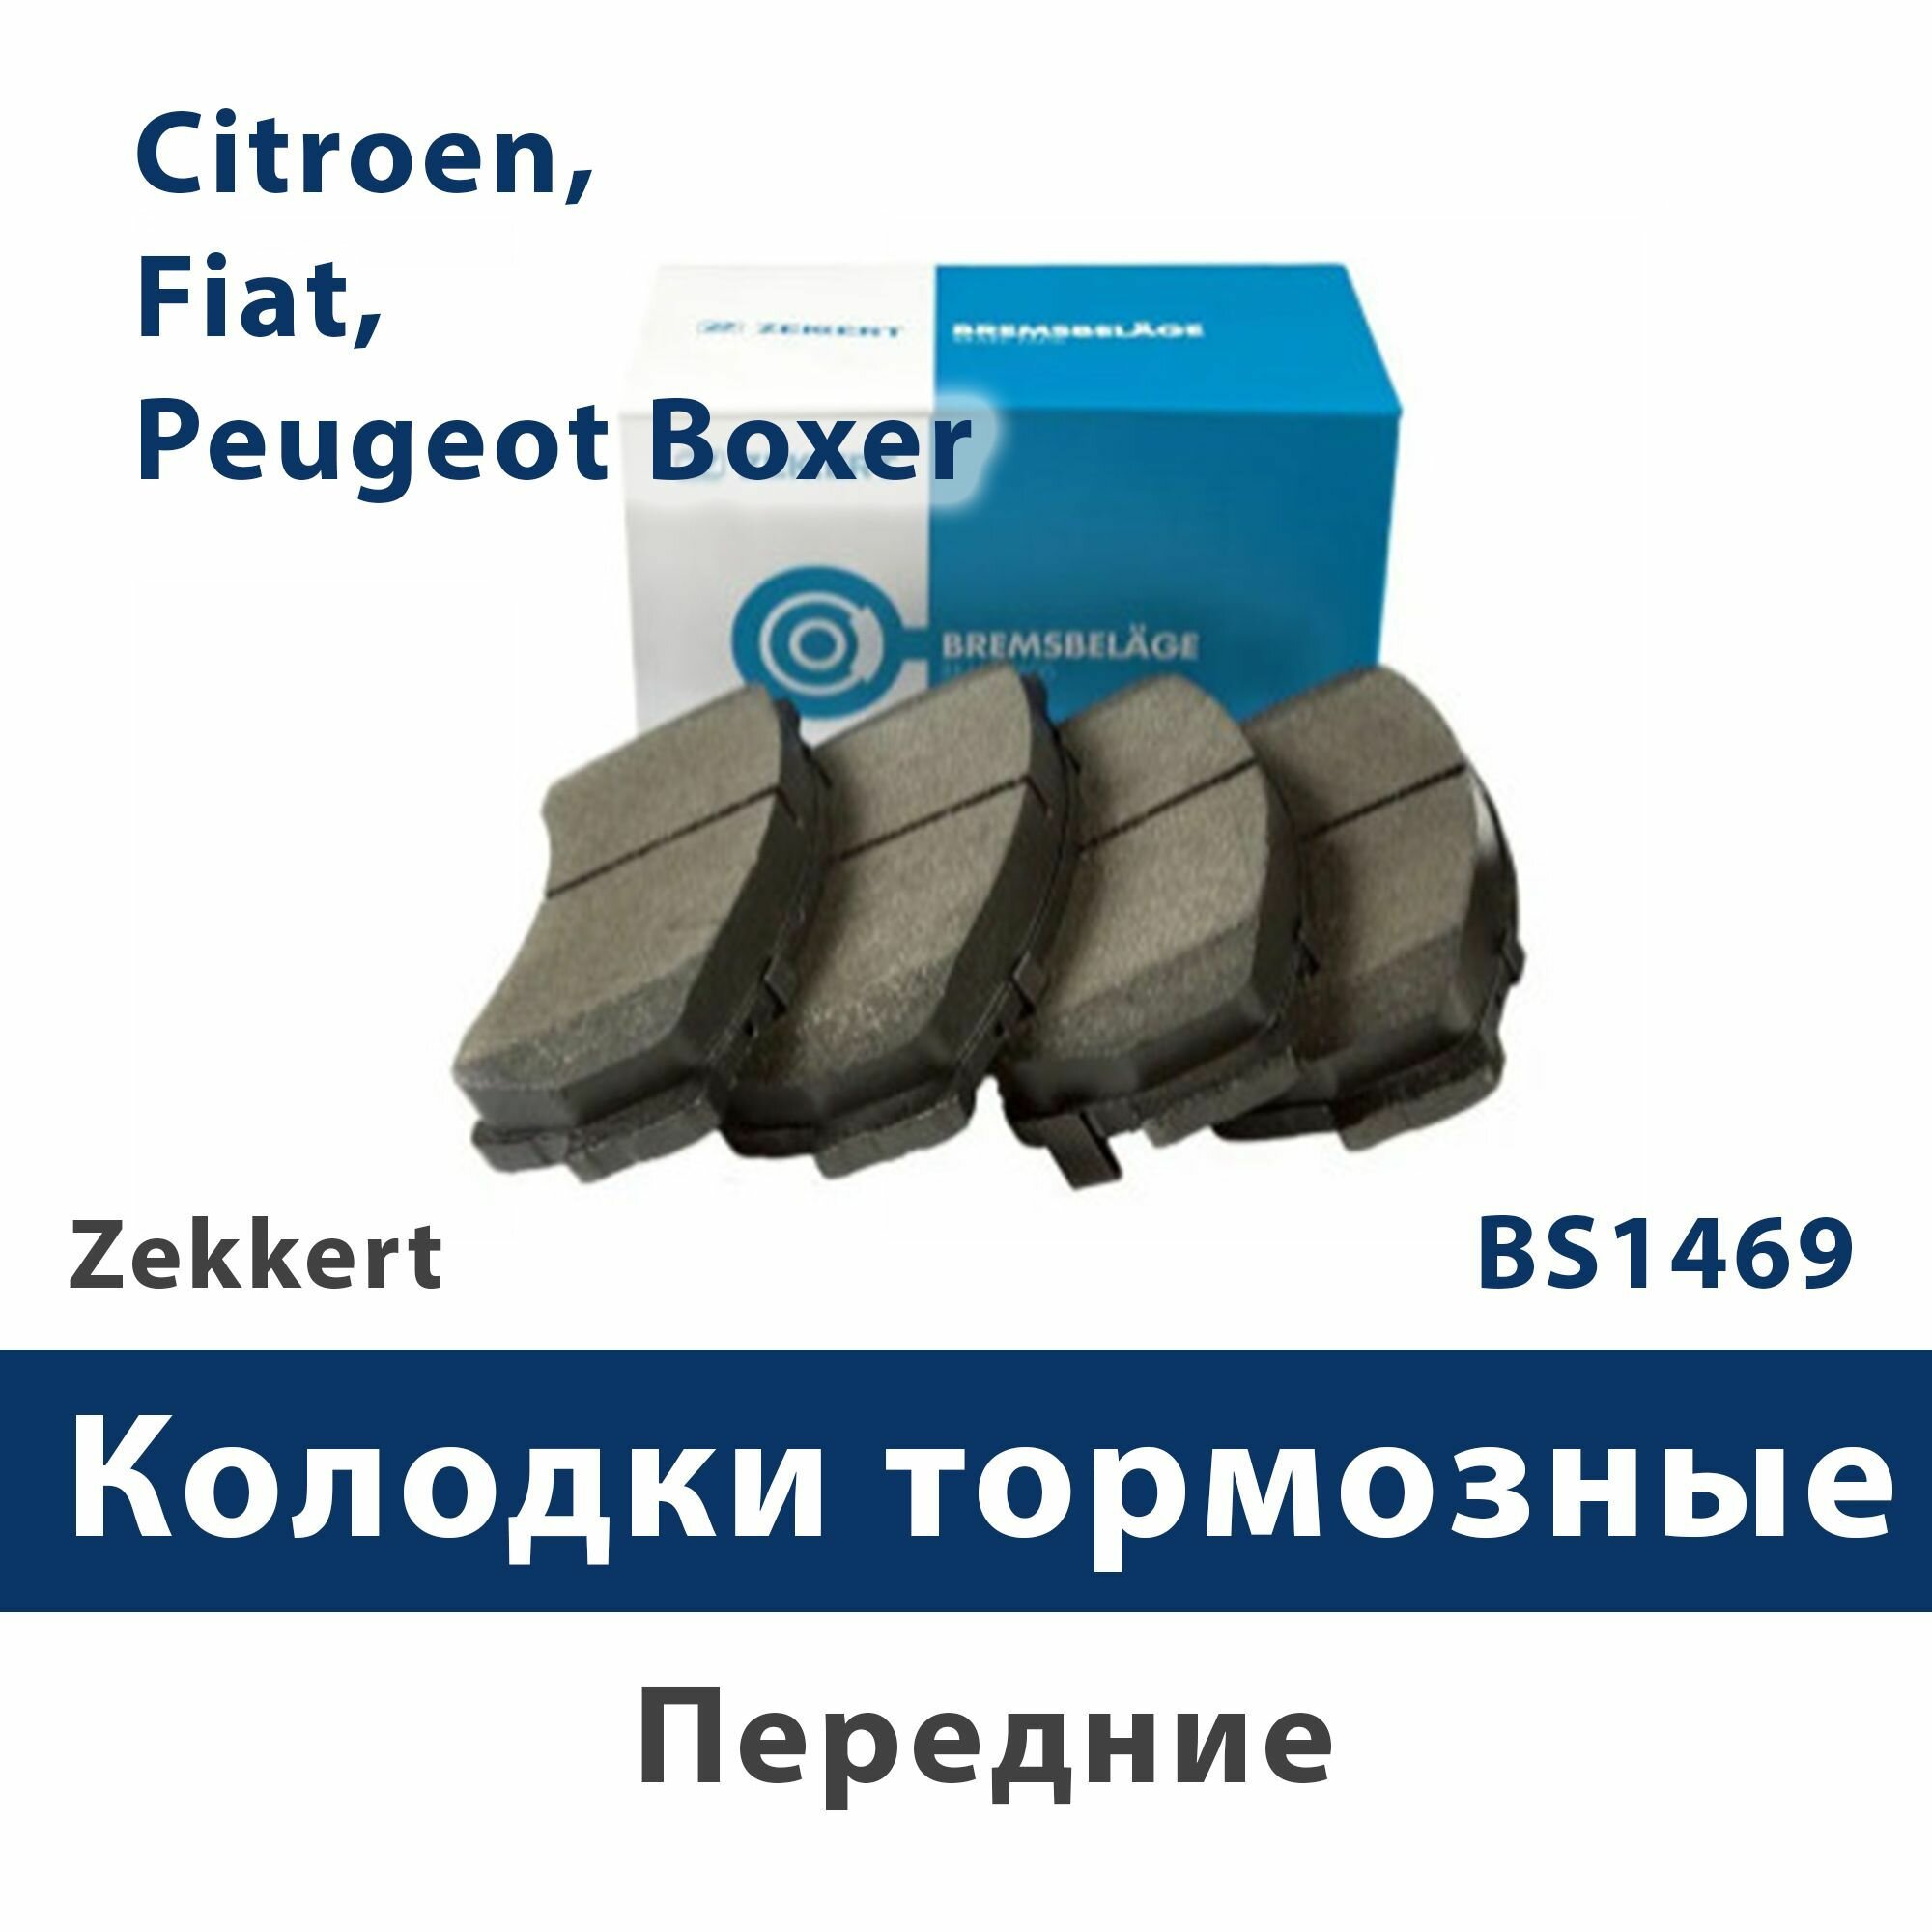 Колодки торм. диск. перед Citroen, Fiat, Peugeot Boxer - ZEKKERT BS1469